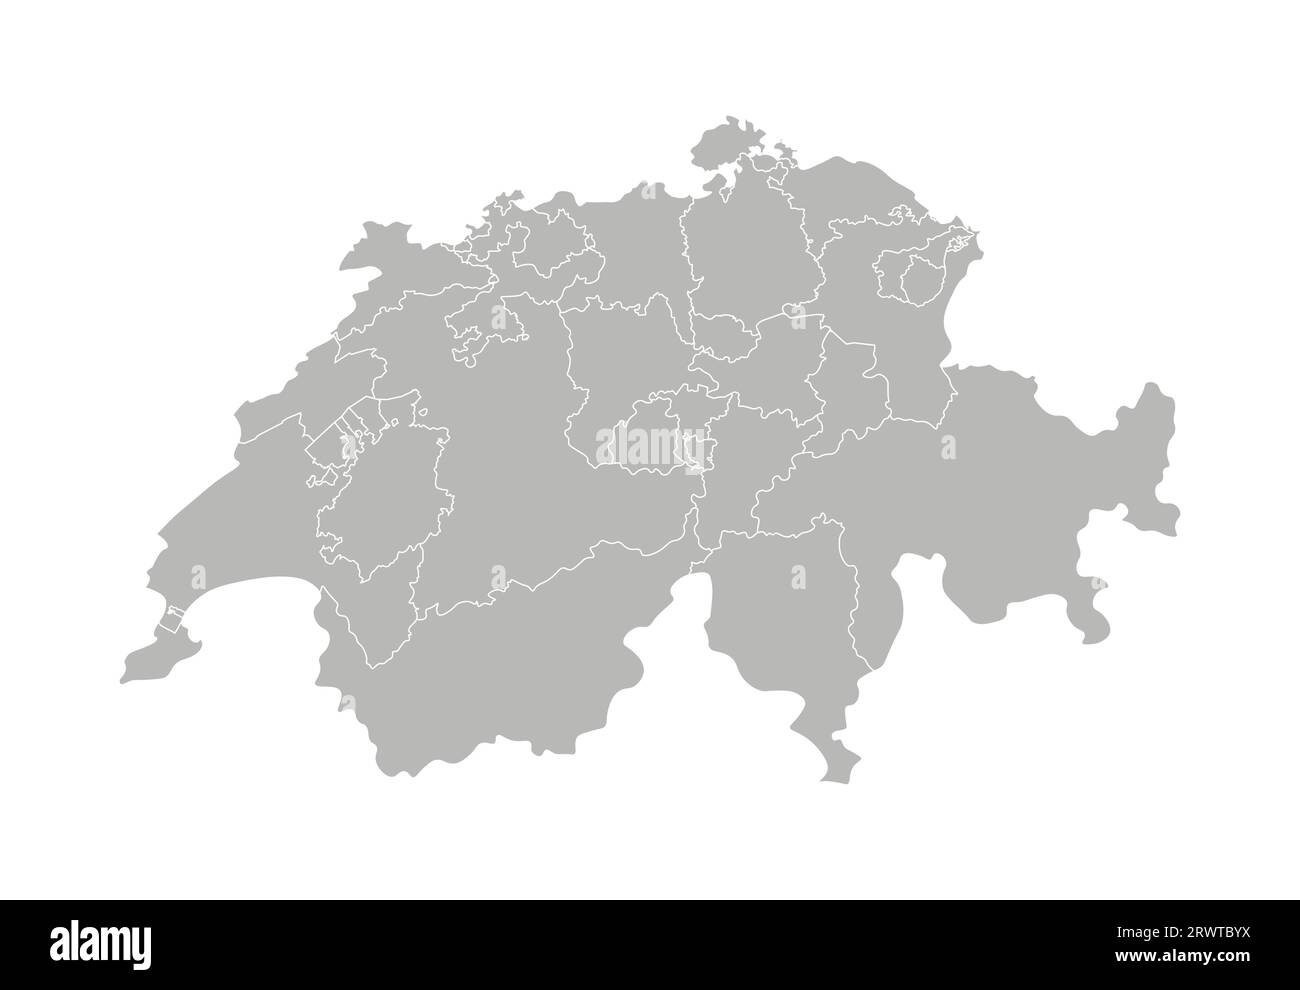 Illustrazione vettoriale isolata della mappa amministrativa semplificata della Svizzera. Confini delle province (regioni). Silhouette grigie. Contorno bianco. Illustrazione Vettoriale